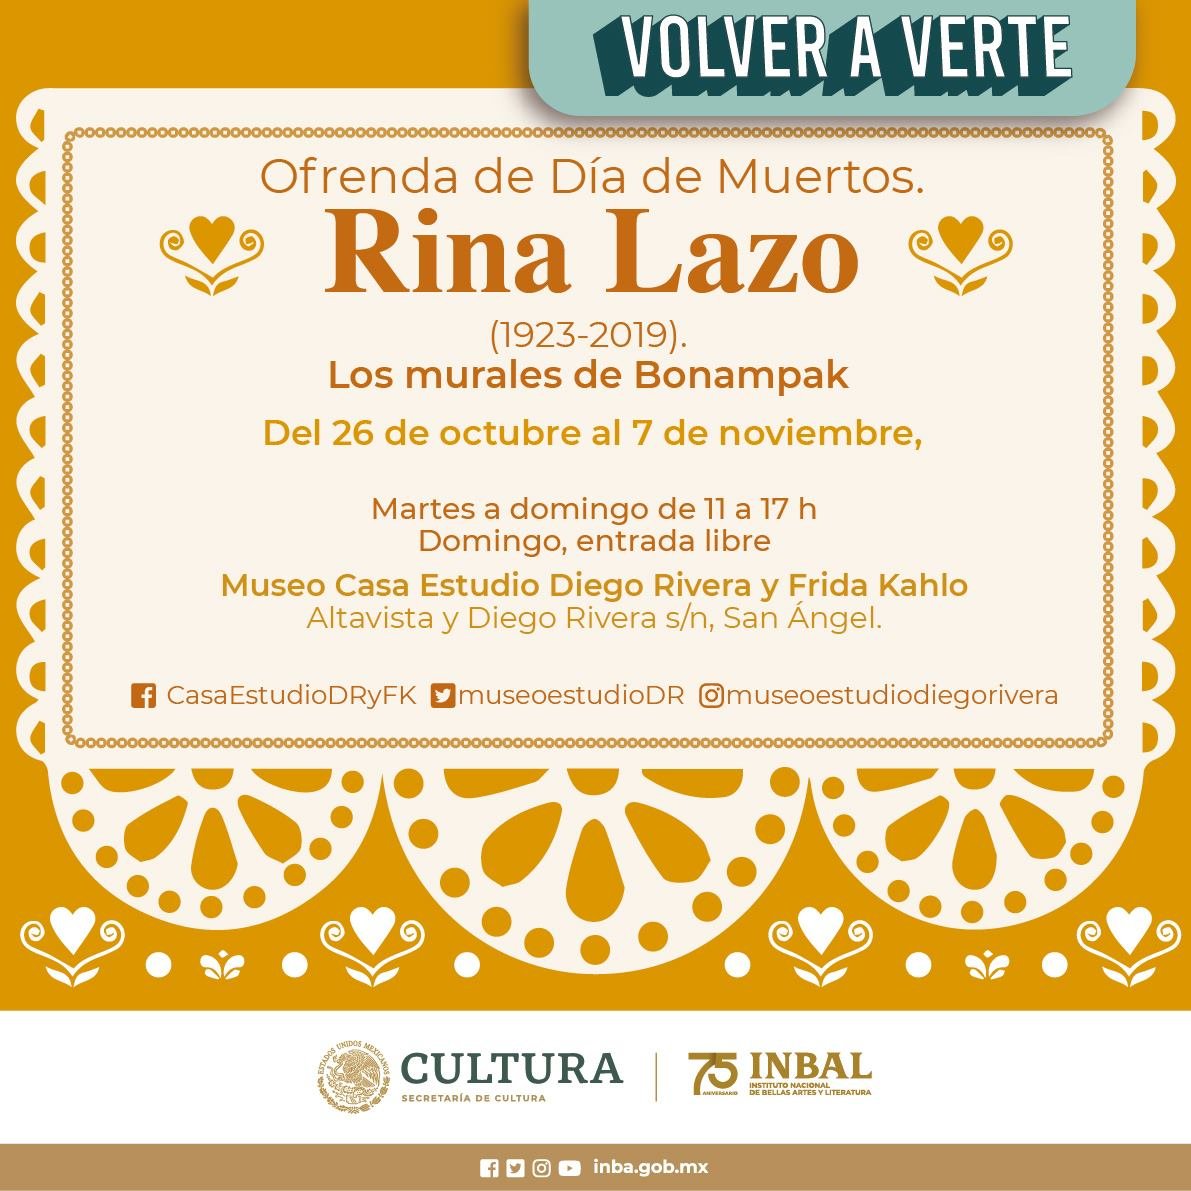 Ofrenda 2021 Museo Casa Estudio Diego Rivera y Frida Kahlo